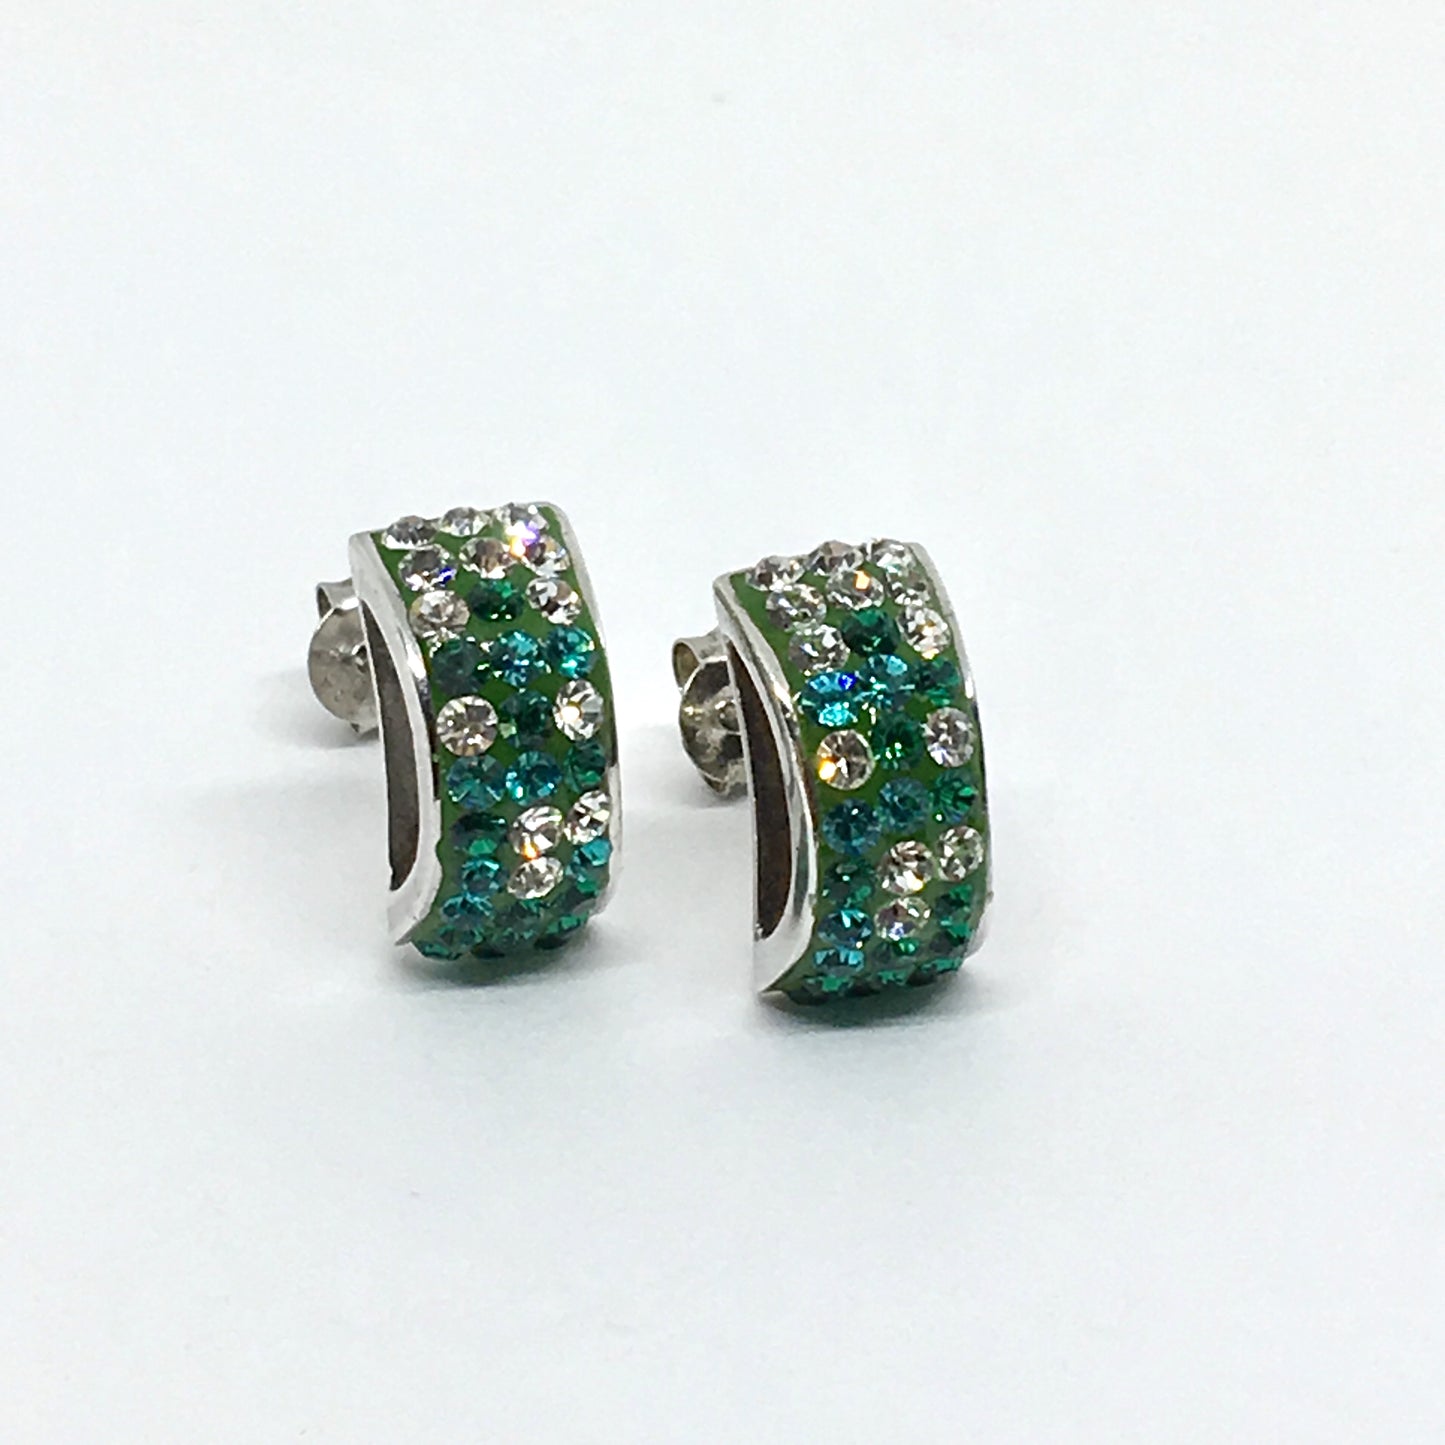 Earrings - Shimmery Emerald Green Crystal Rolo Style Sterling Silver Earrings - USA